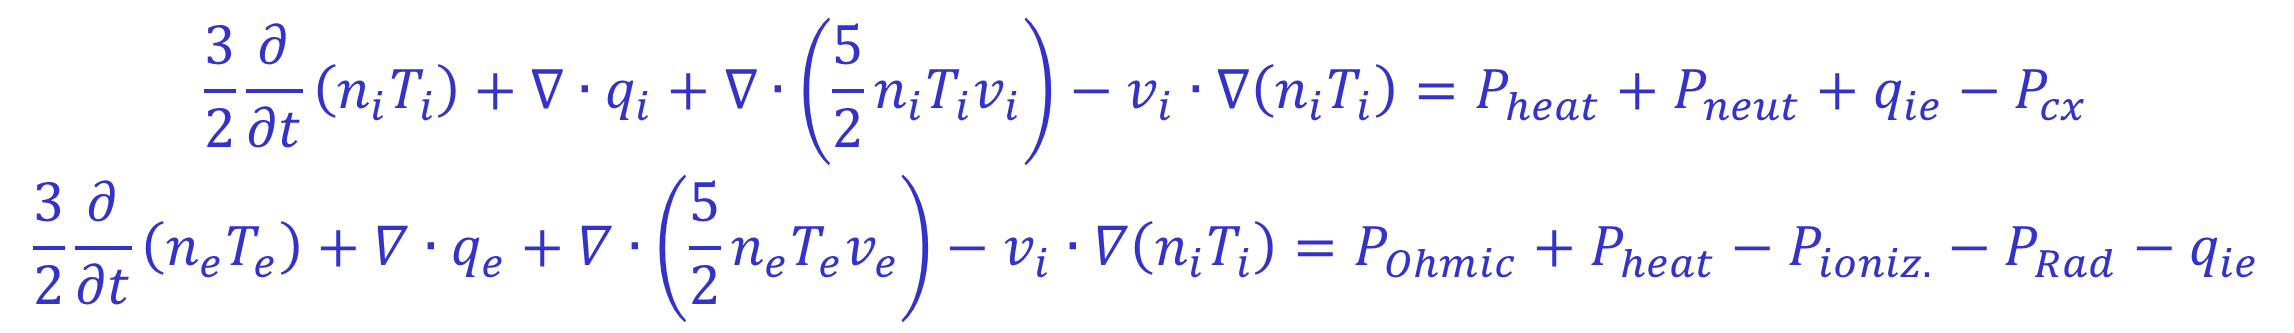 Energy Balance Equations